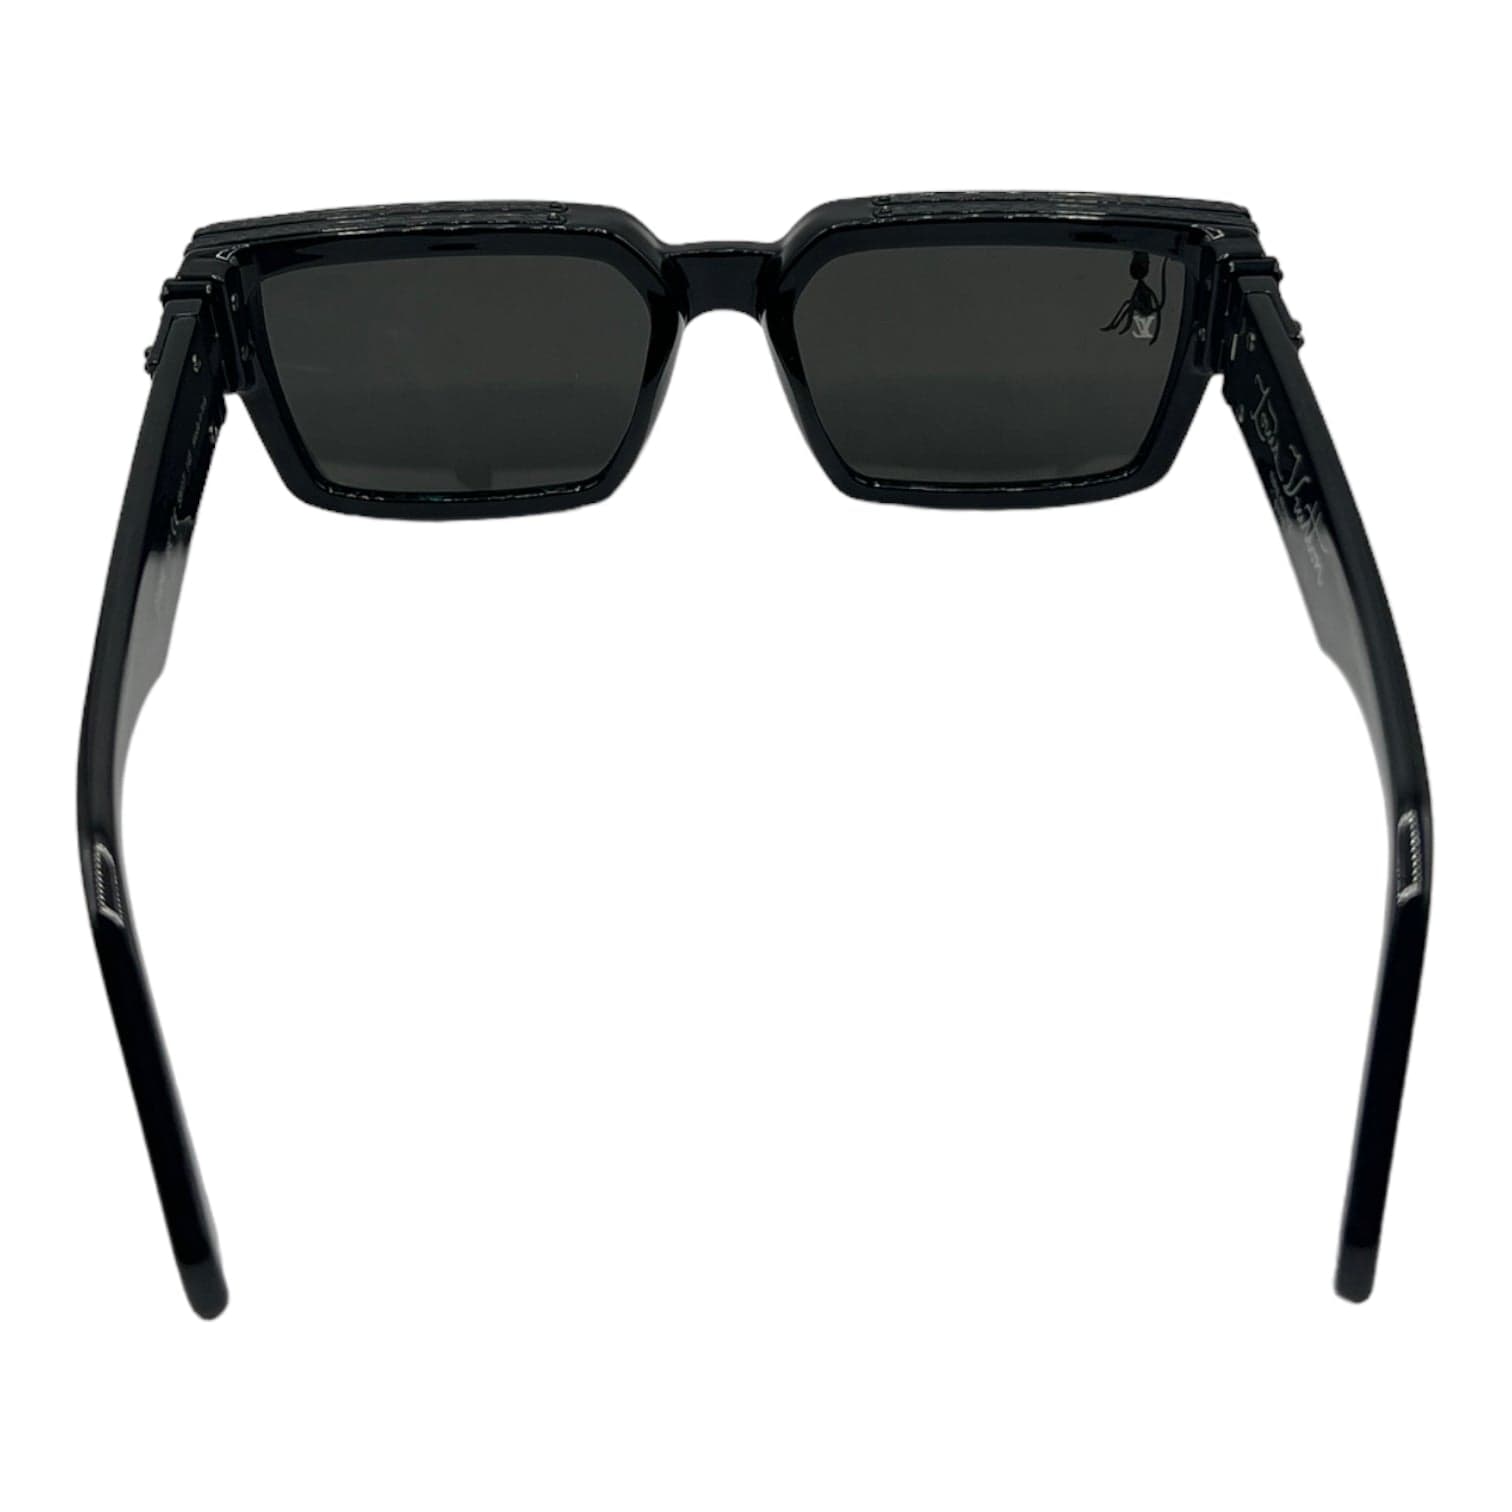 Louis Vuitton 2021 1.1 Millionaires Sunglasses - Black Sunglasses